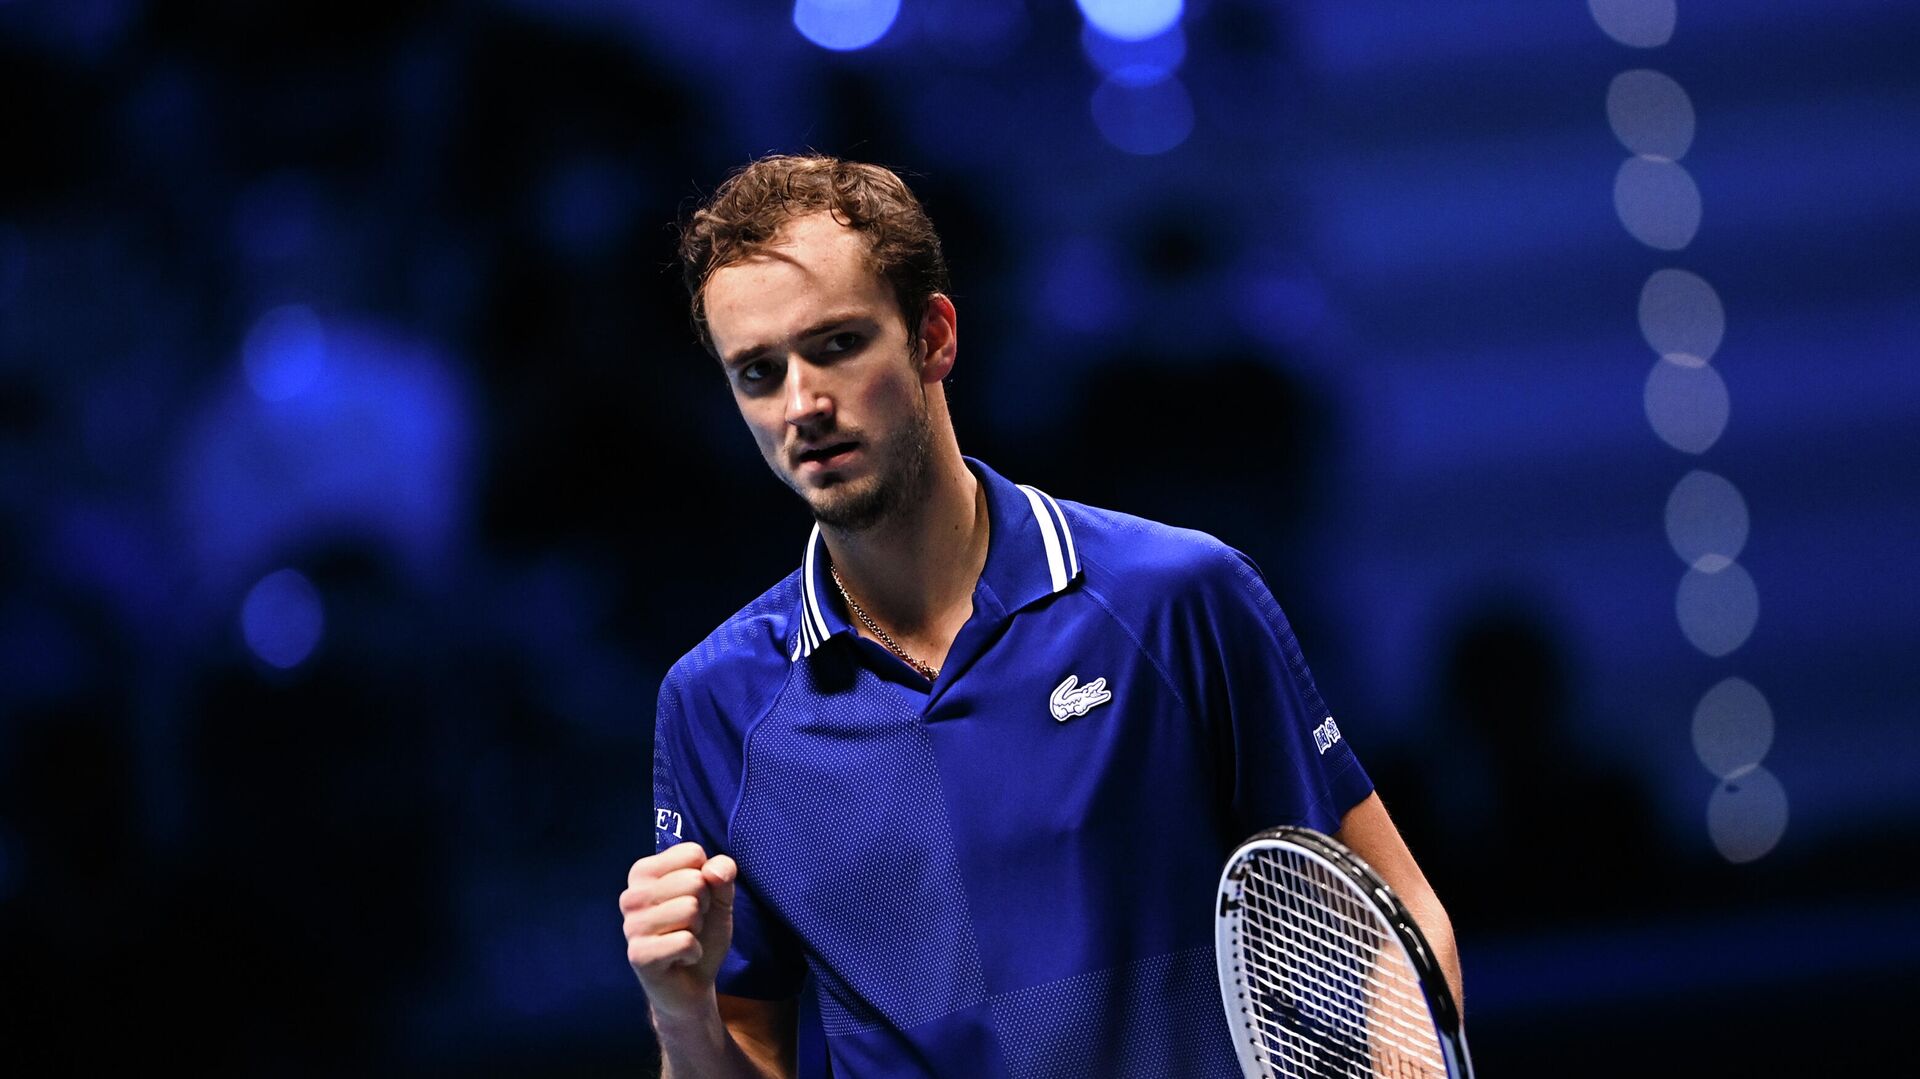 Тренер Медведева рассказал о работе теннисиста с психологом